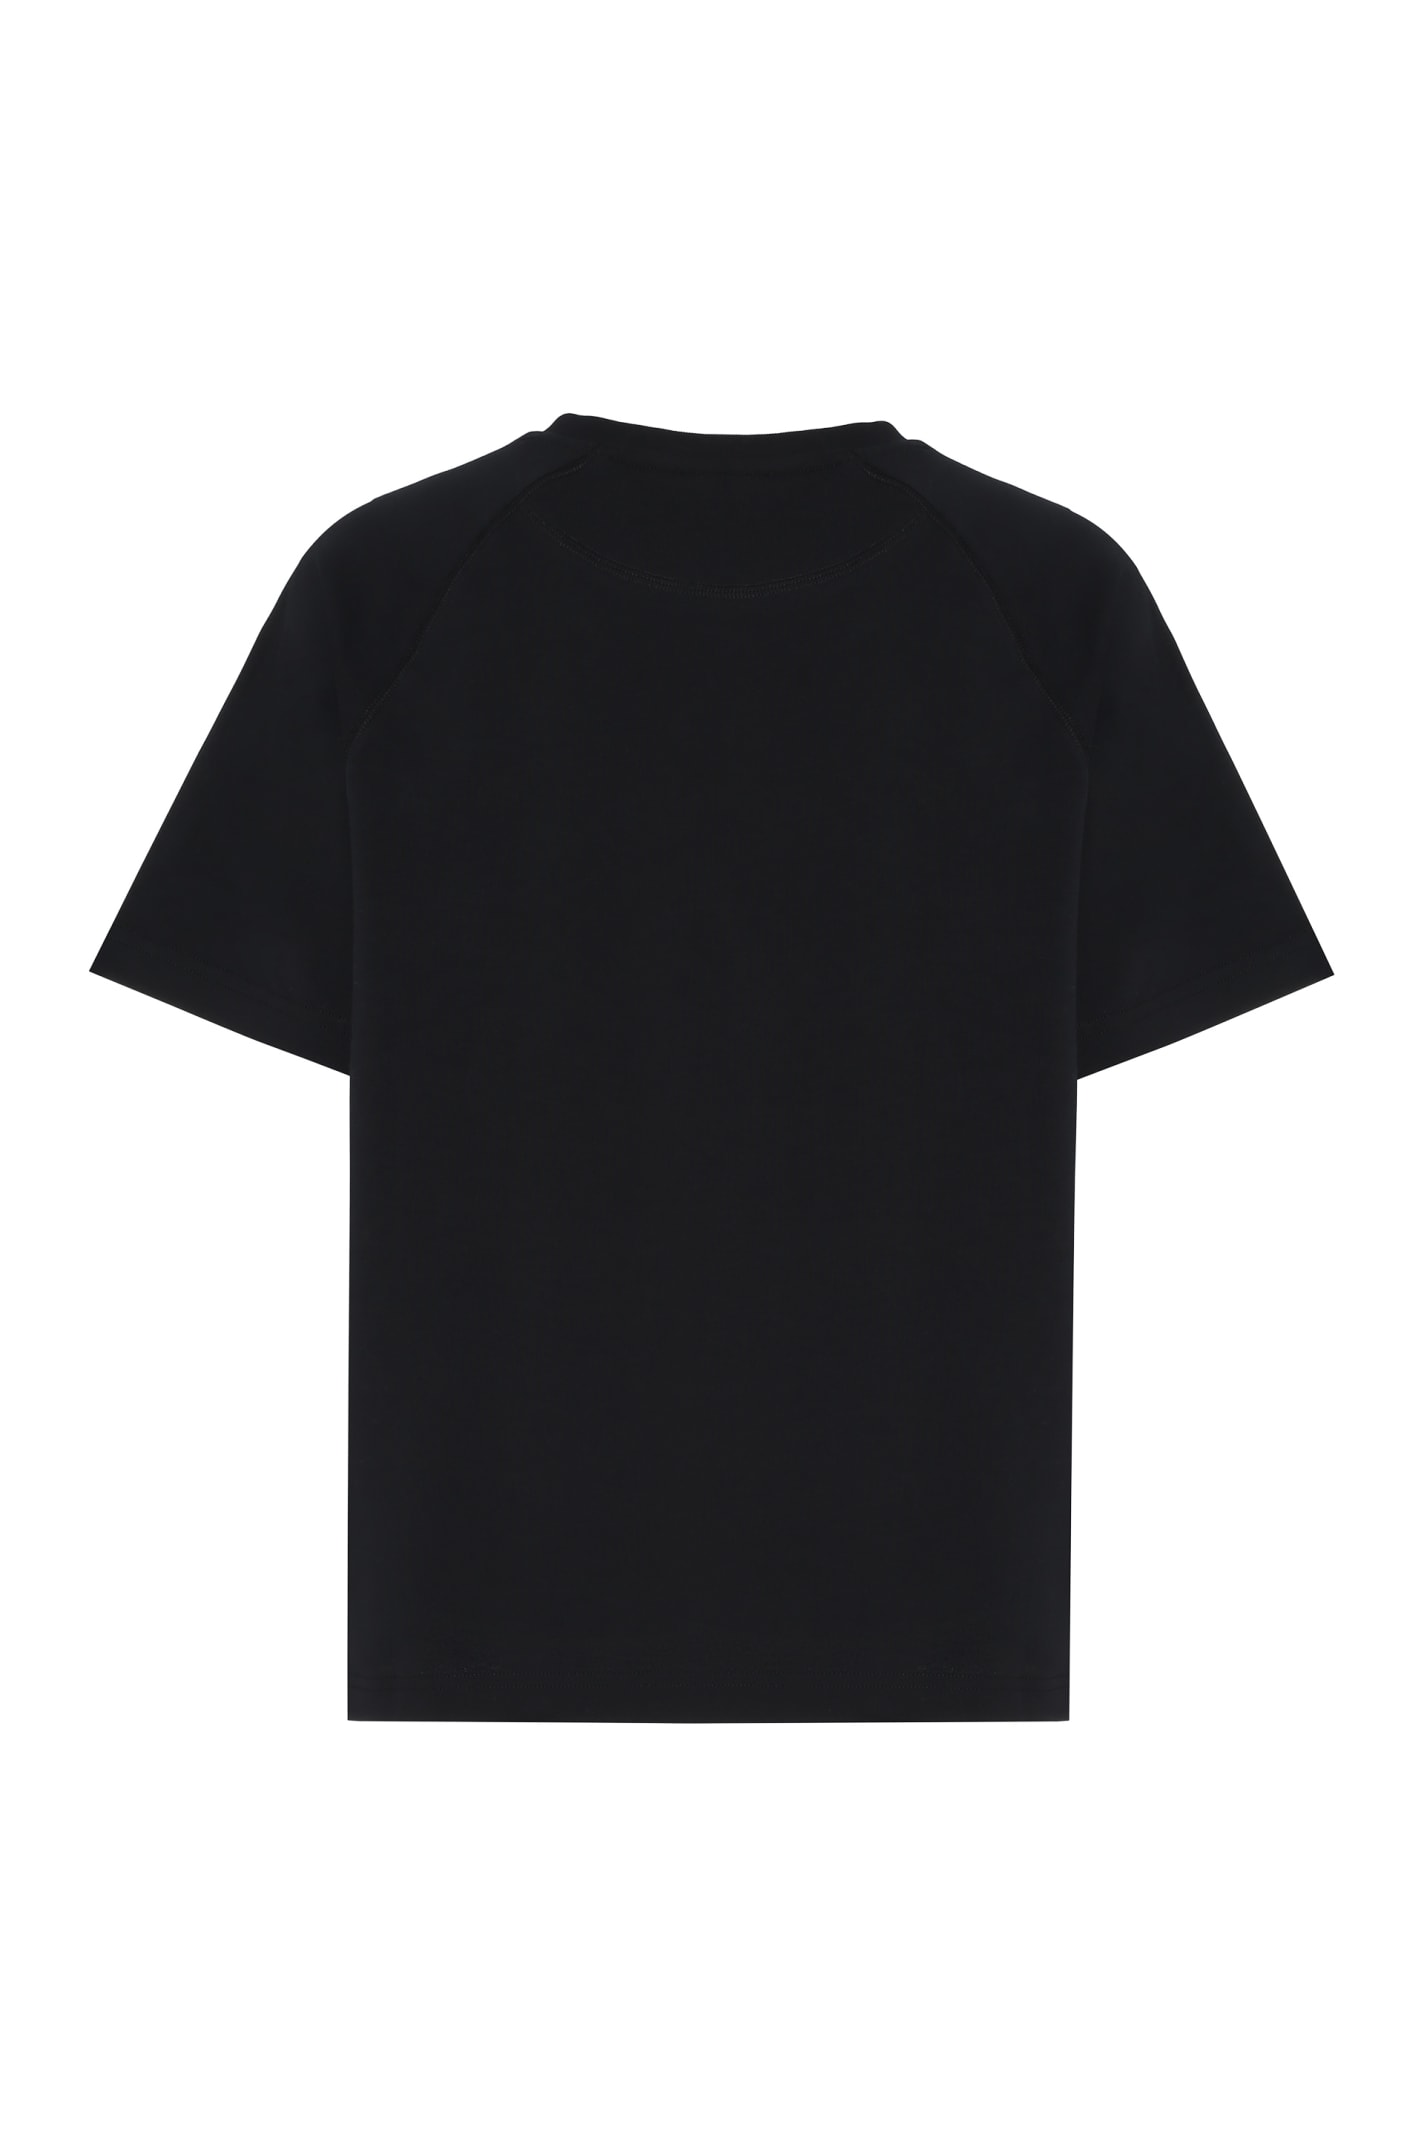 Shop Apc Michele Cotton T-shirt T-shirt In Black